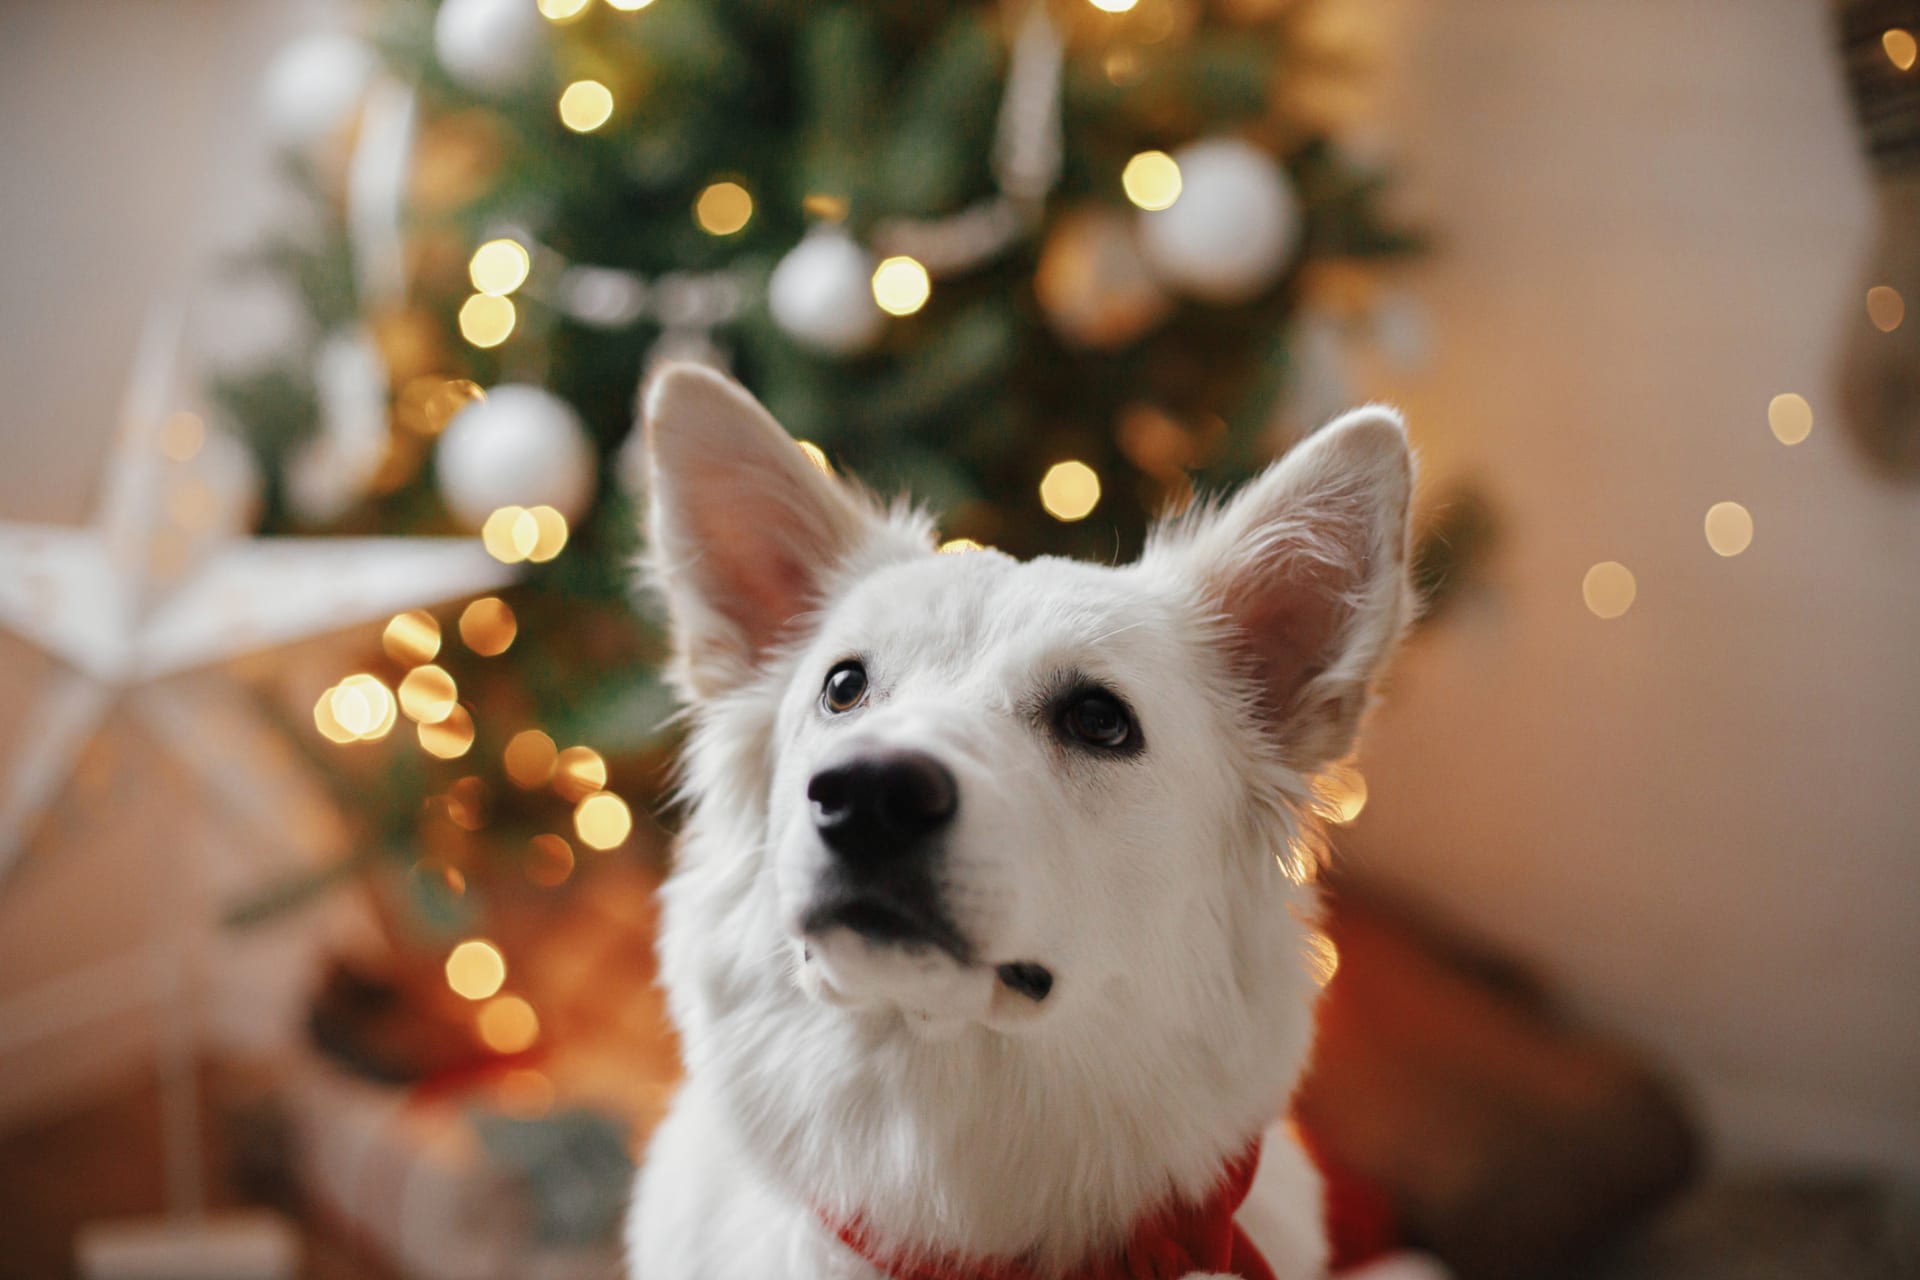 Užijte si Vánoce i se svým psem